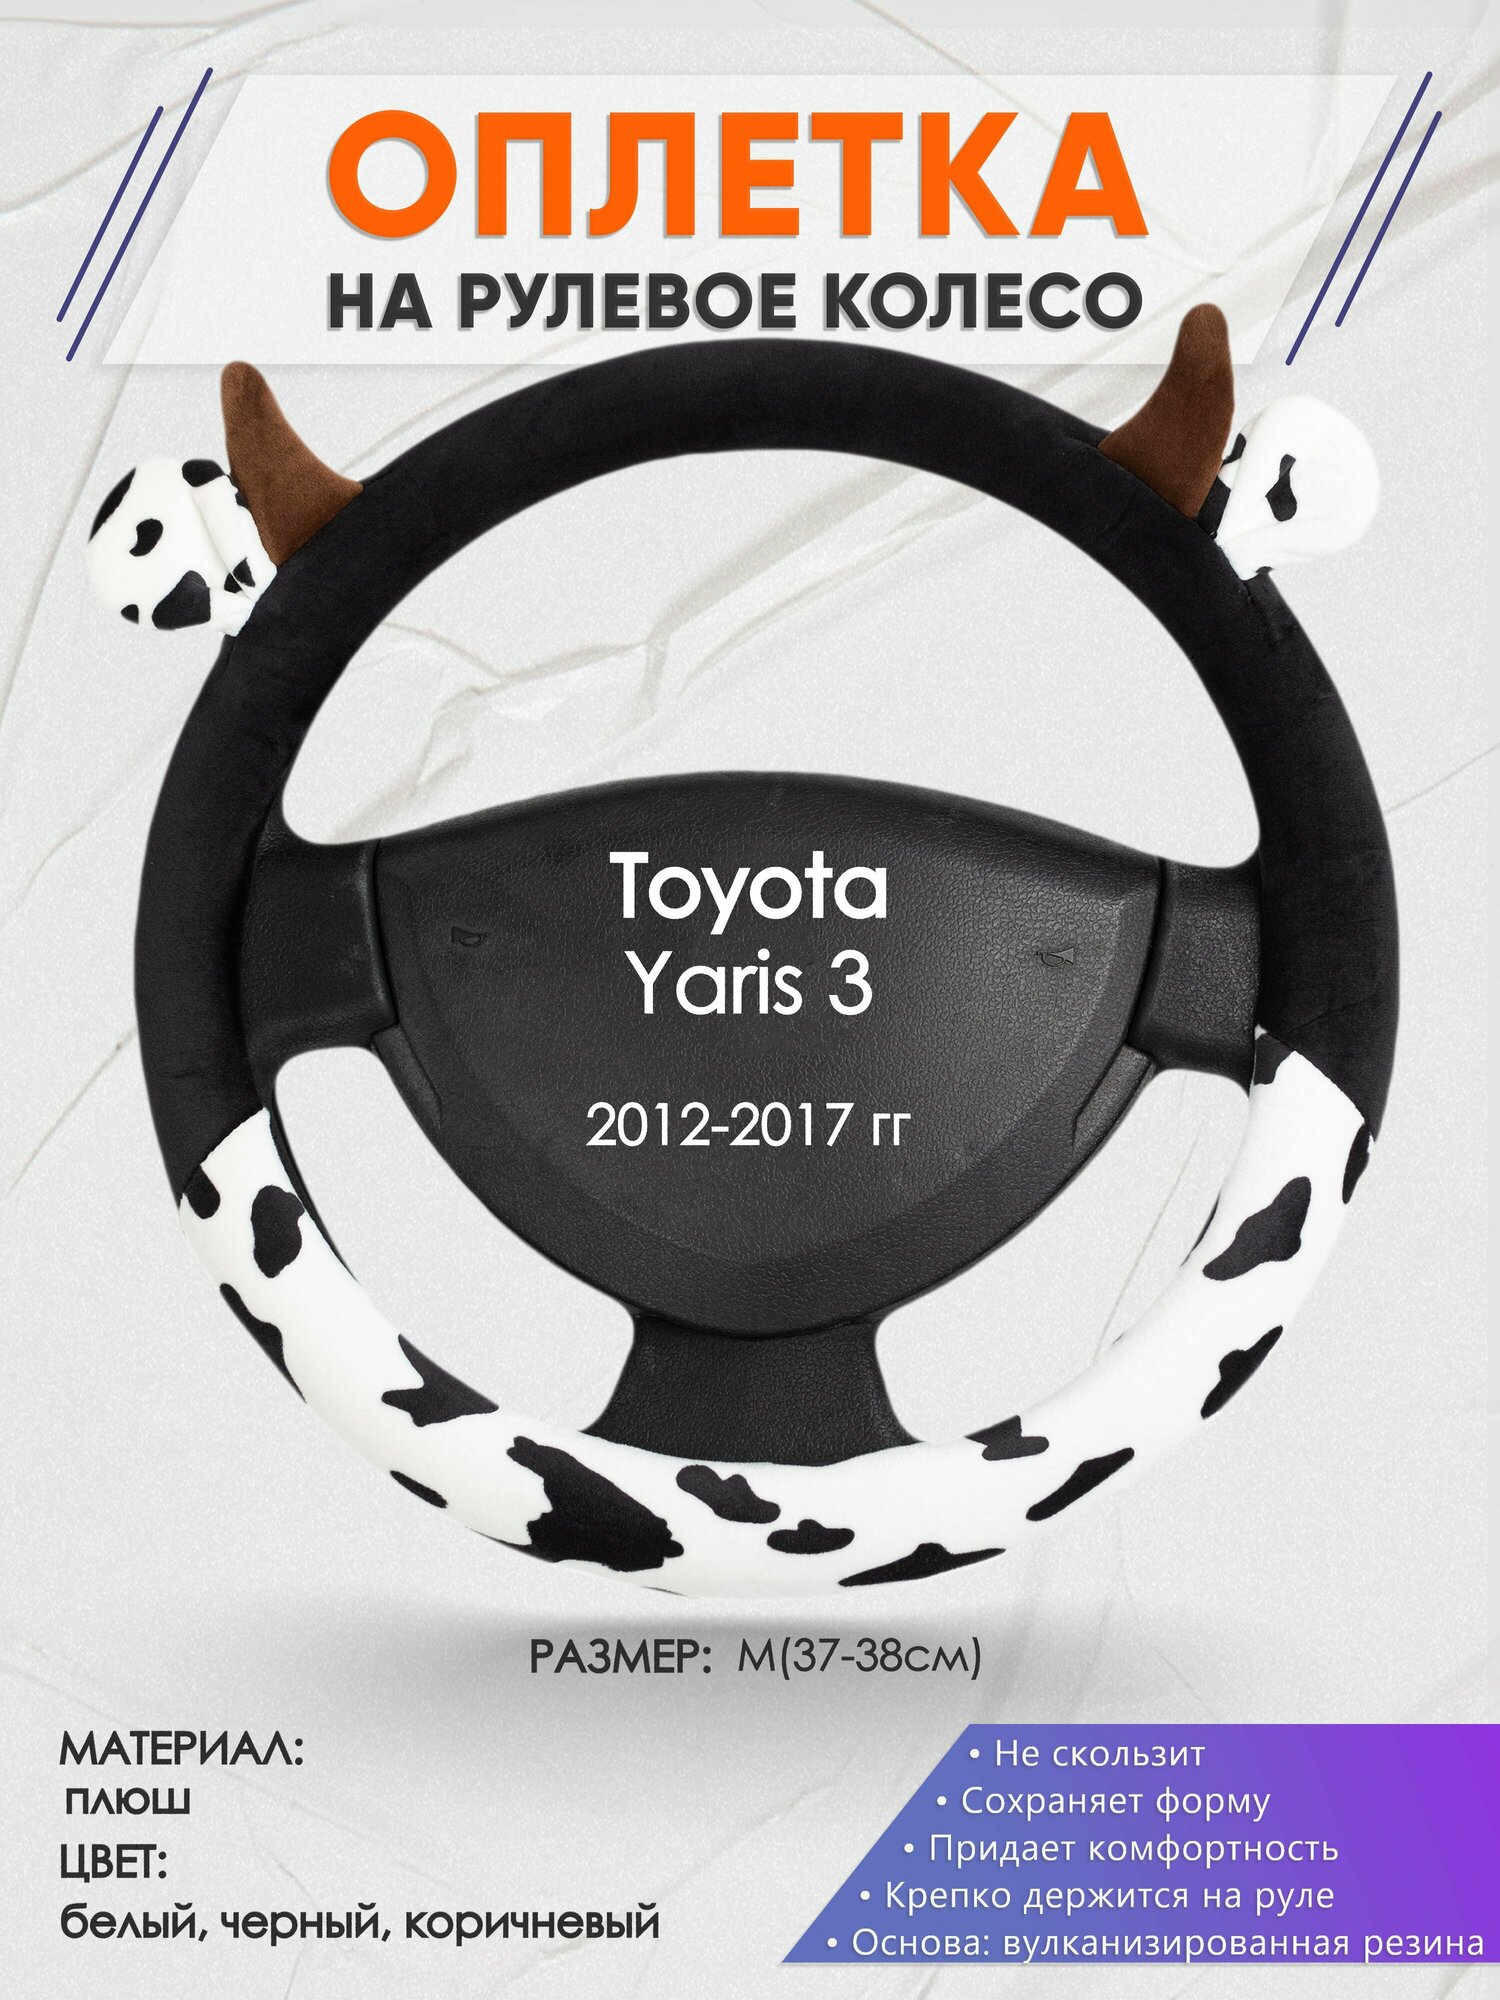 Оплетка на руль для Toyota Yaris 3(Тойота Ярис 3) 2012-2017, M(37-38см), Искусственный мех 39